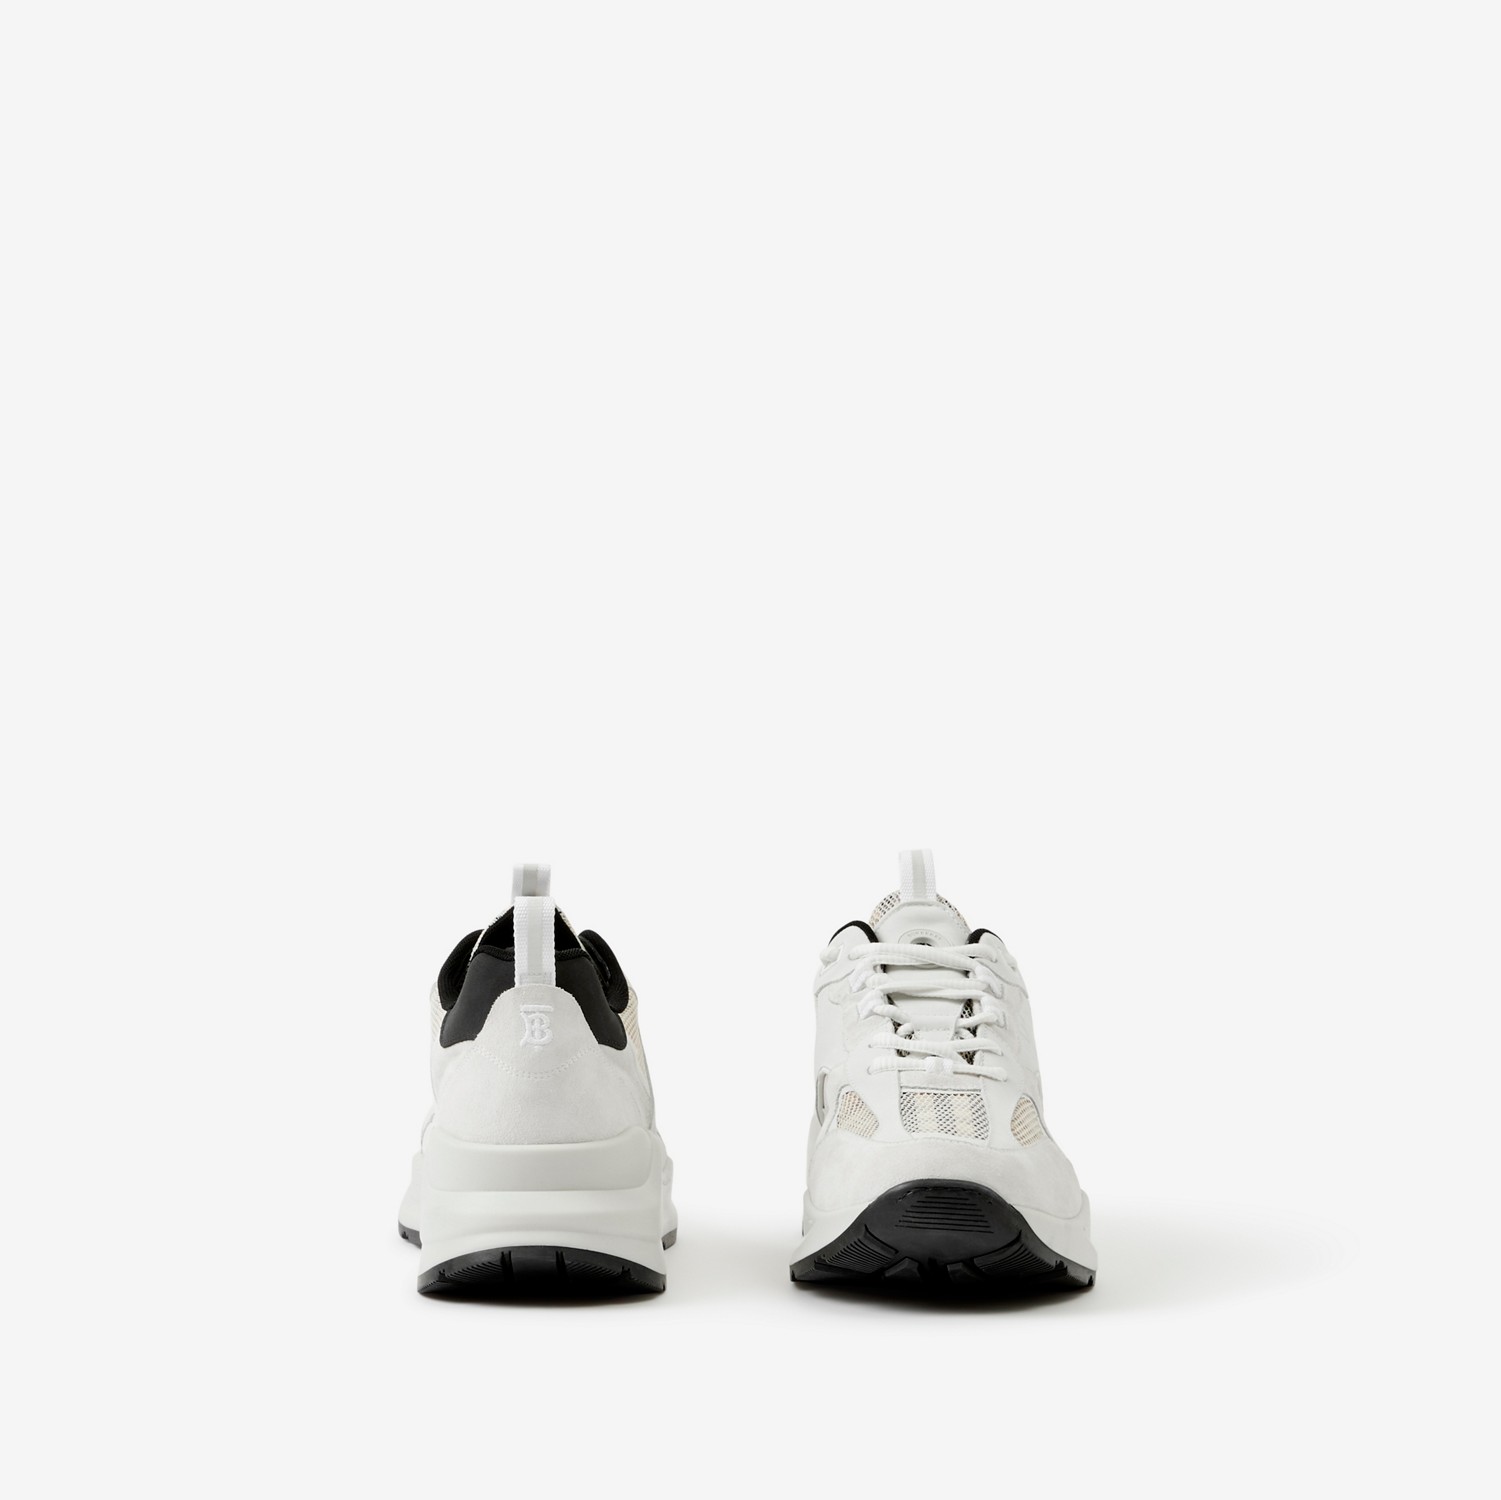 Sneaker in tessuto a rete, pelle scamosciata e cotone Check (Beige Archivio/bianco) - Uomo | Sito ufficiale Burberry®